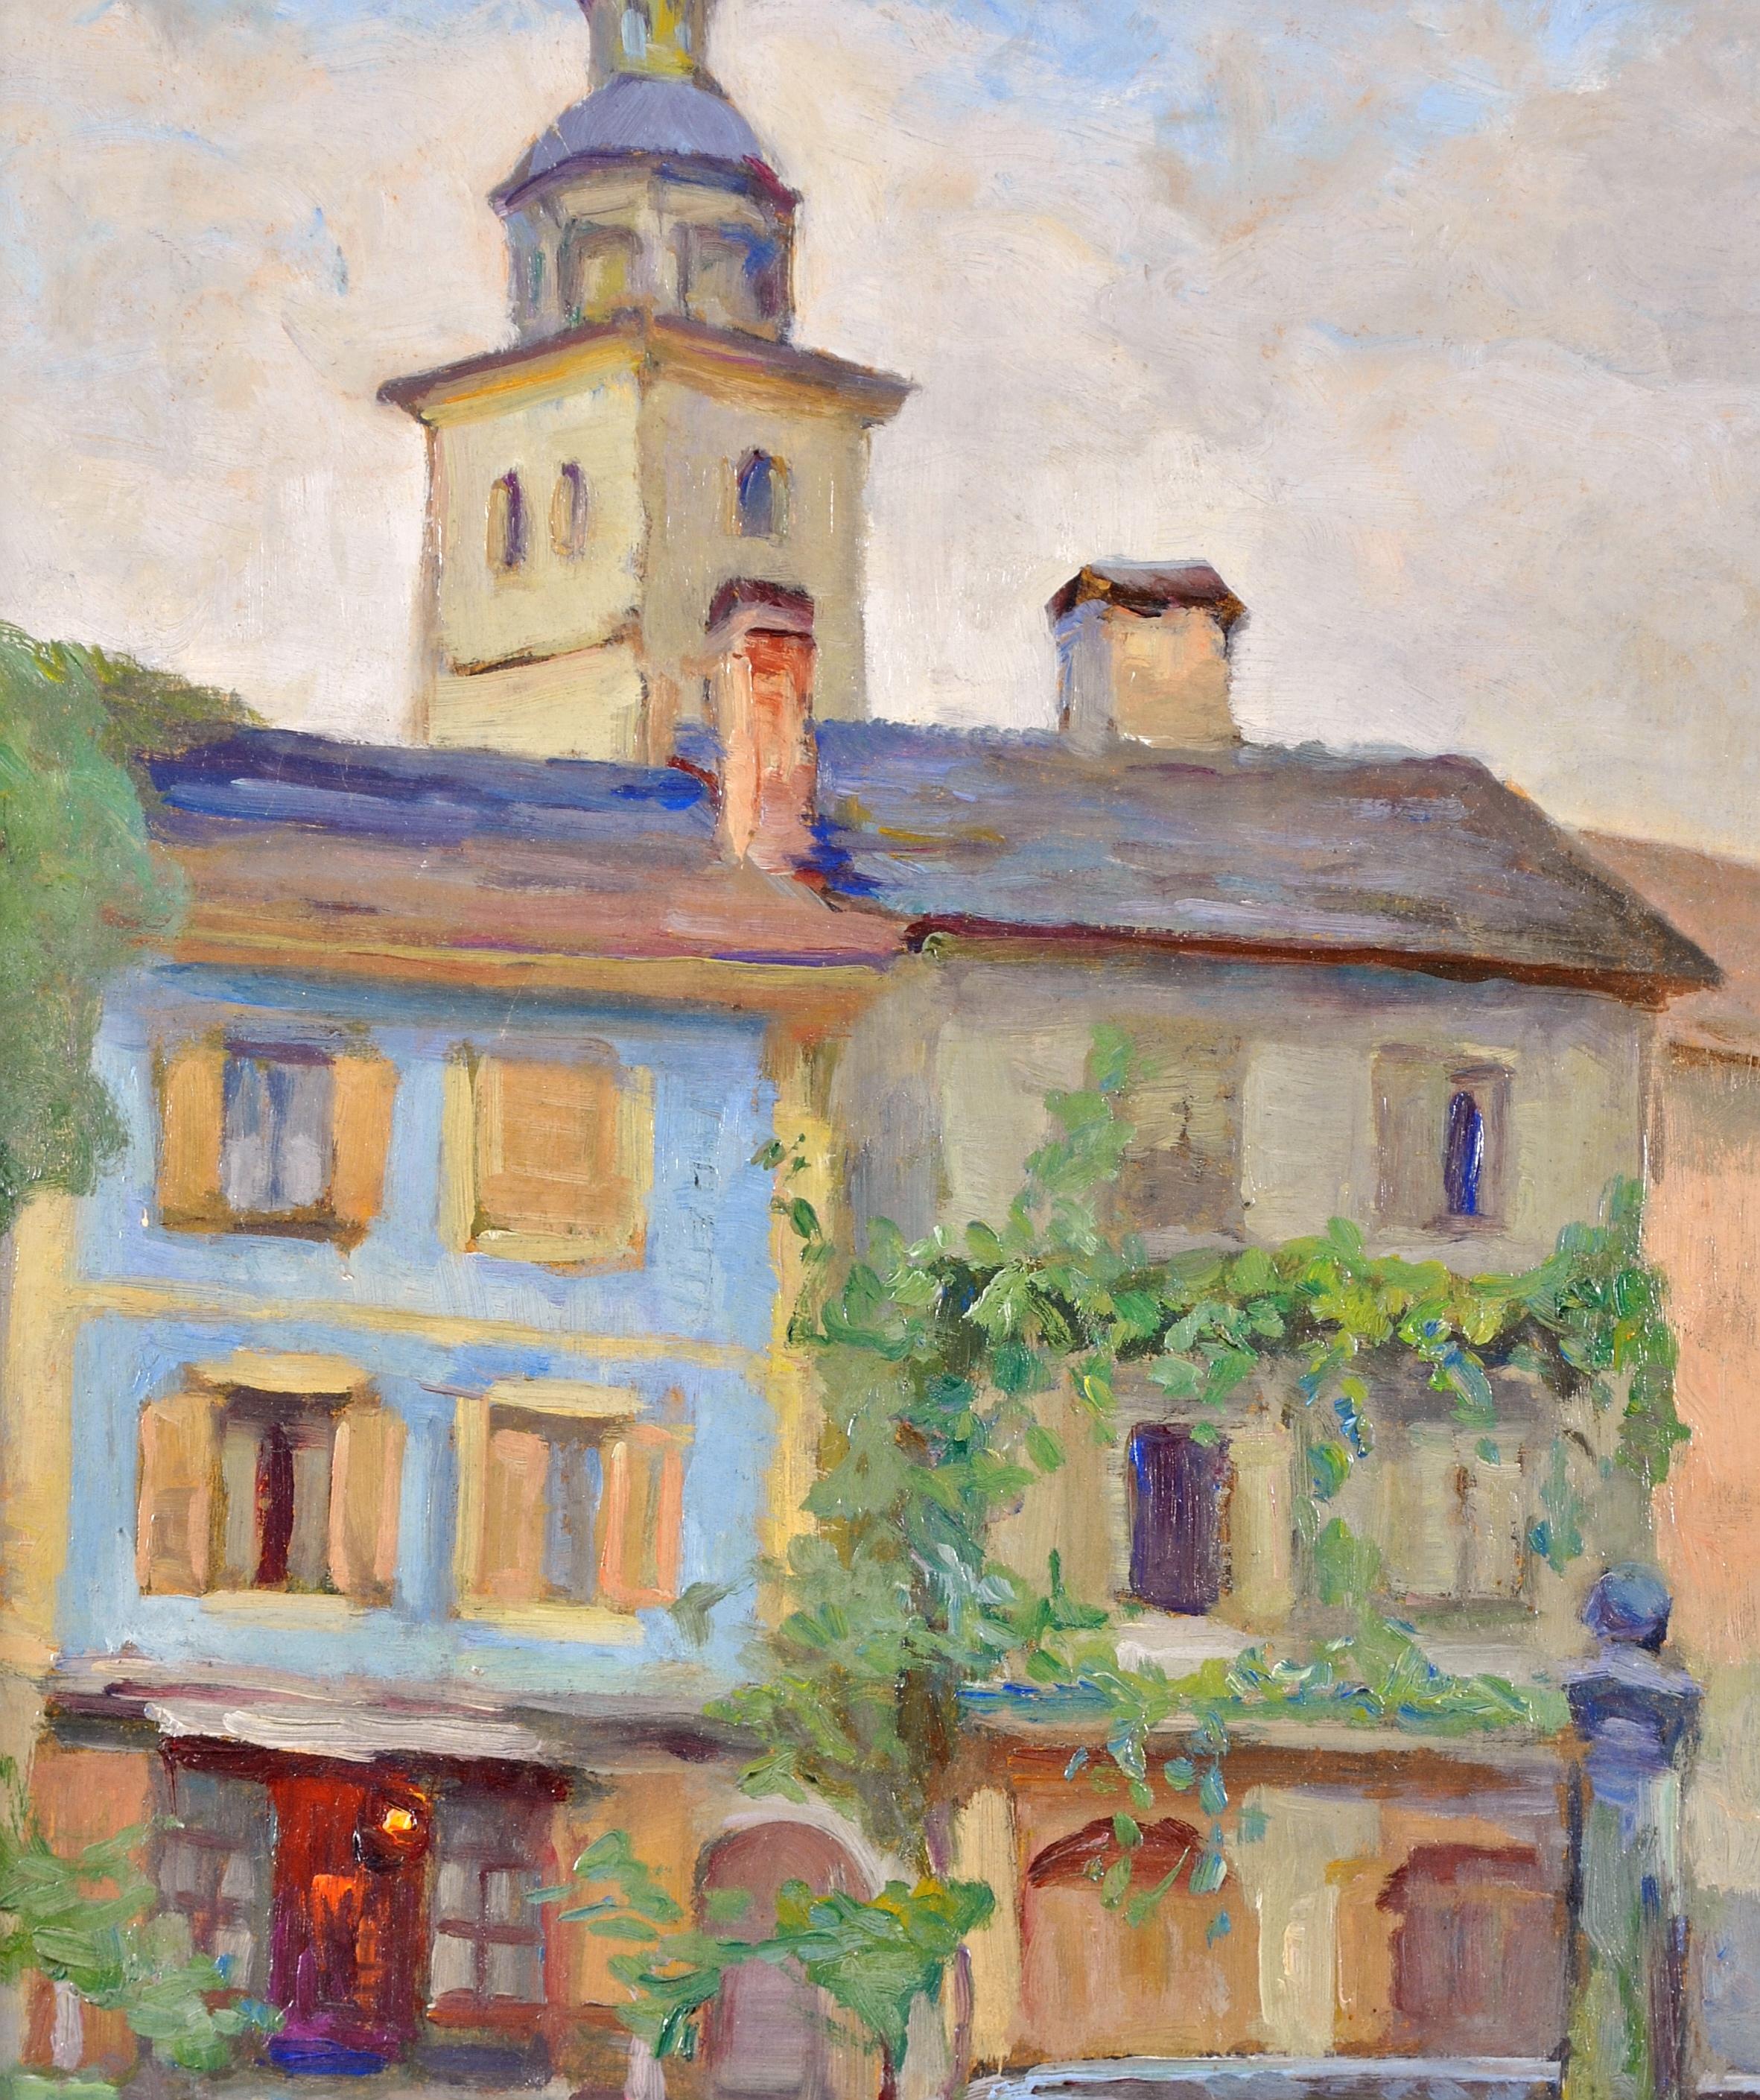 Le Puits - Paysage impressionniste français du 20e siècle - Impressionnisme Painting par Jeanne Lauvernay-Pettitjean